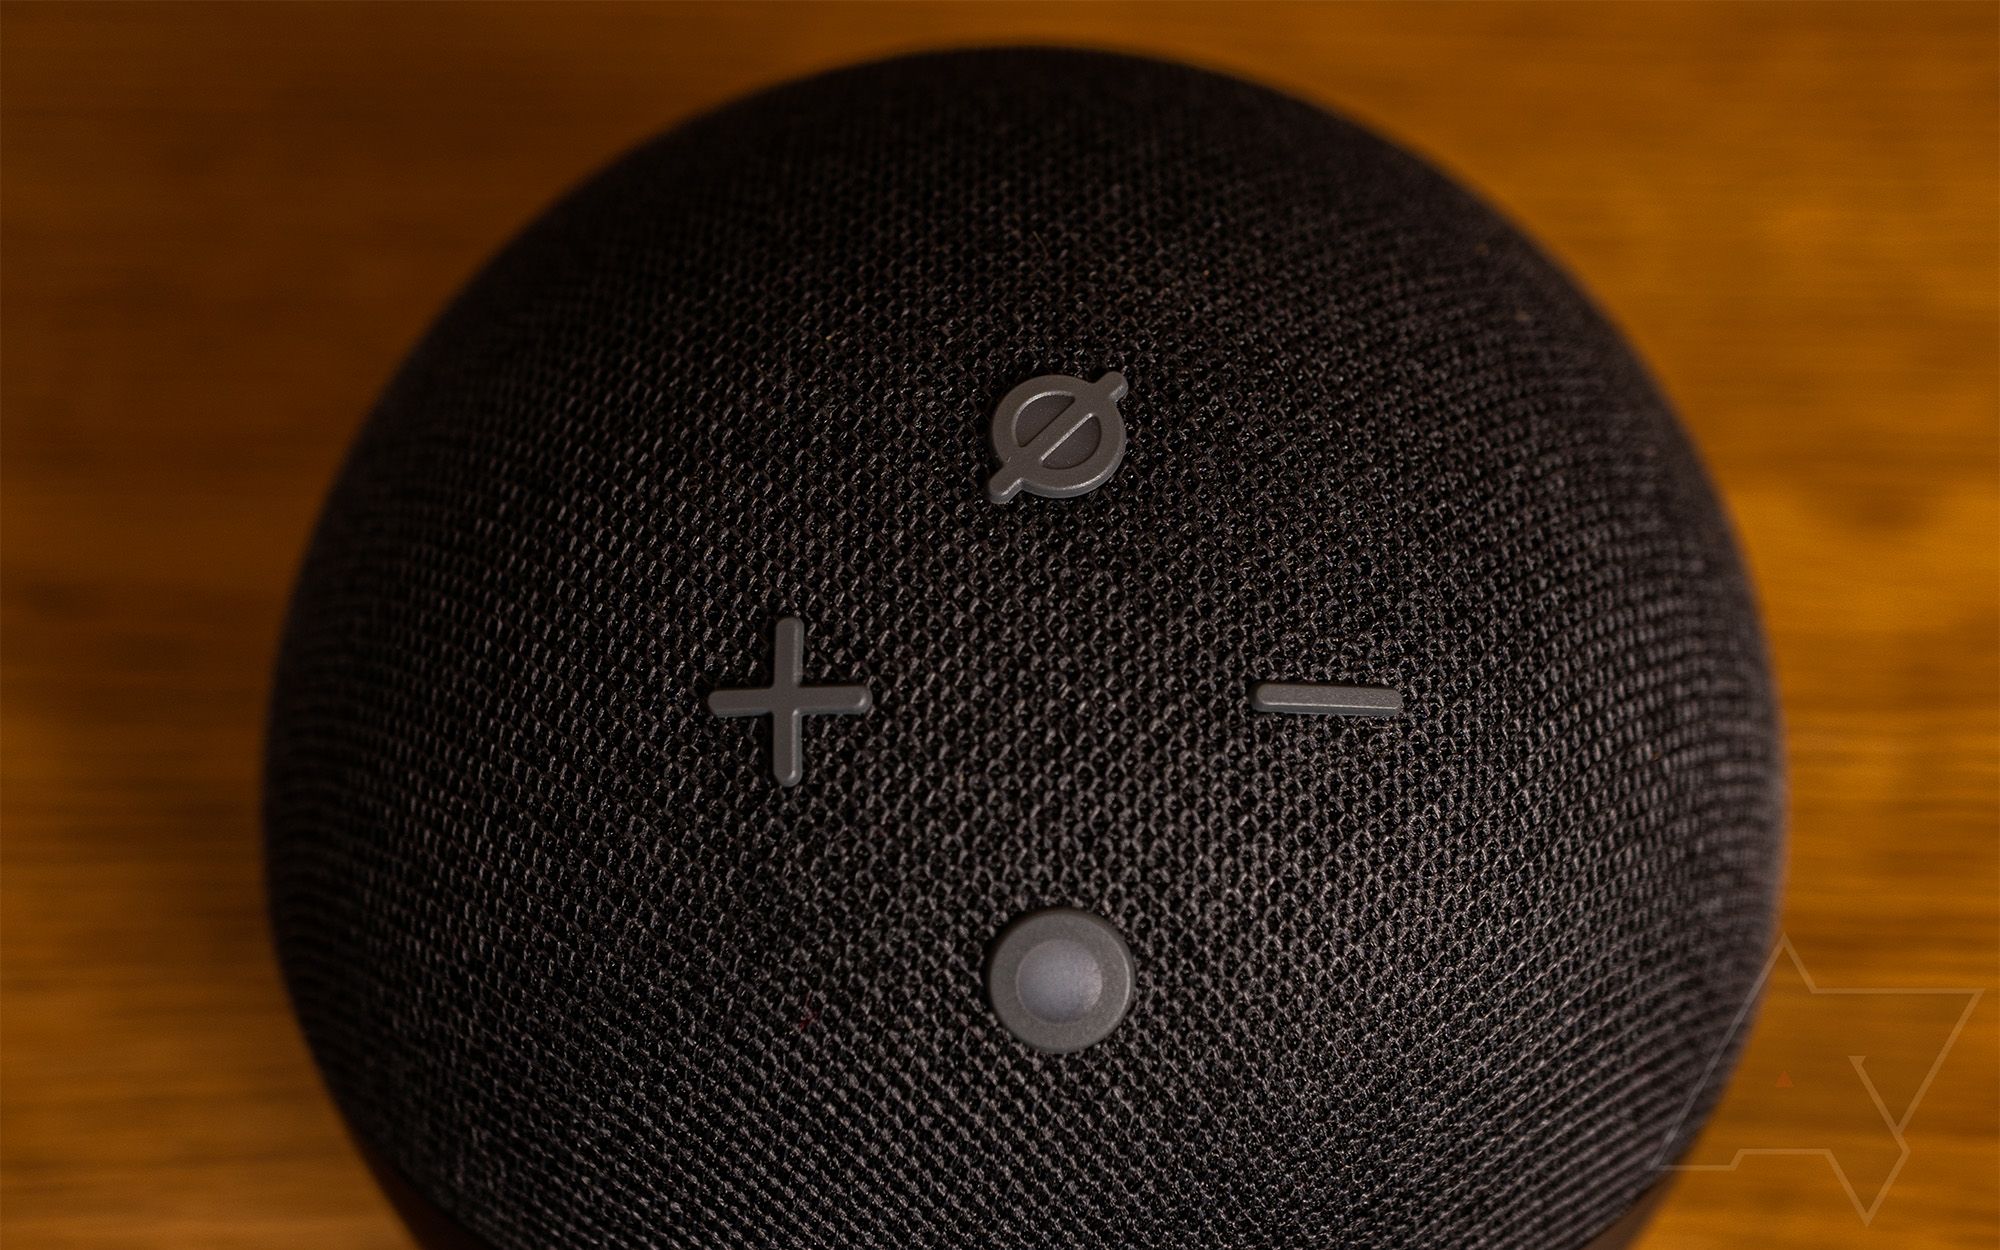 Vista superior do Amazon Echo Dot de 4ª geração, mostrando os botões físicos